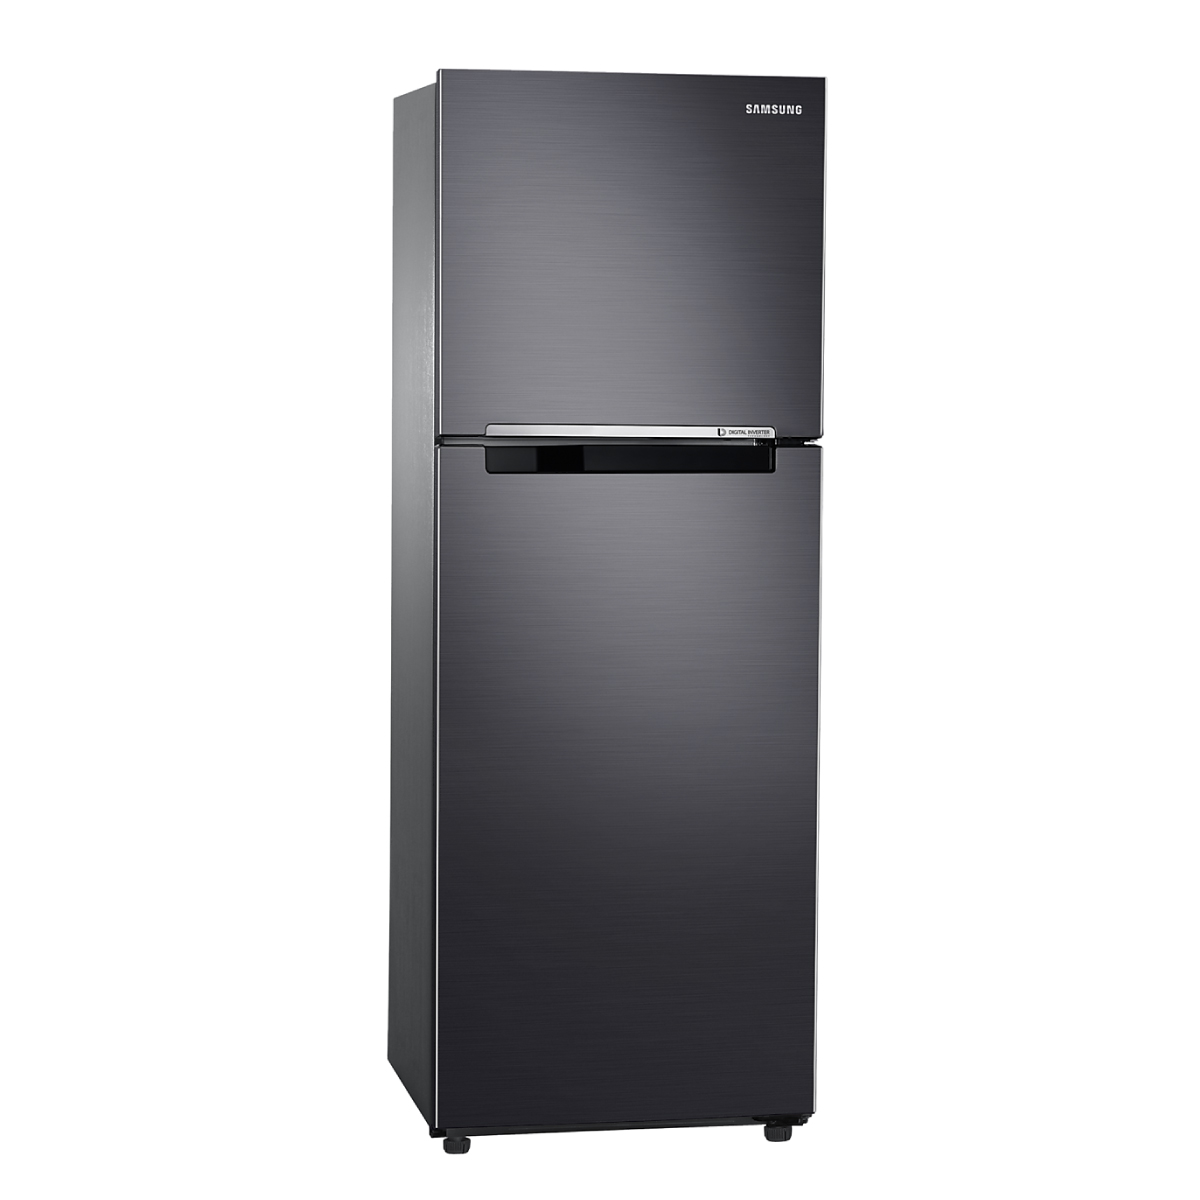 ตู้เย็น 2 ประตู SAMSUNG รุ่น RT22FGRADB1/ST ขนาด 8.3 คิว รับประกันสินค้า 5 ปี คอมเพรสเชอร์ 20 ปี